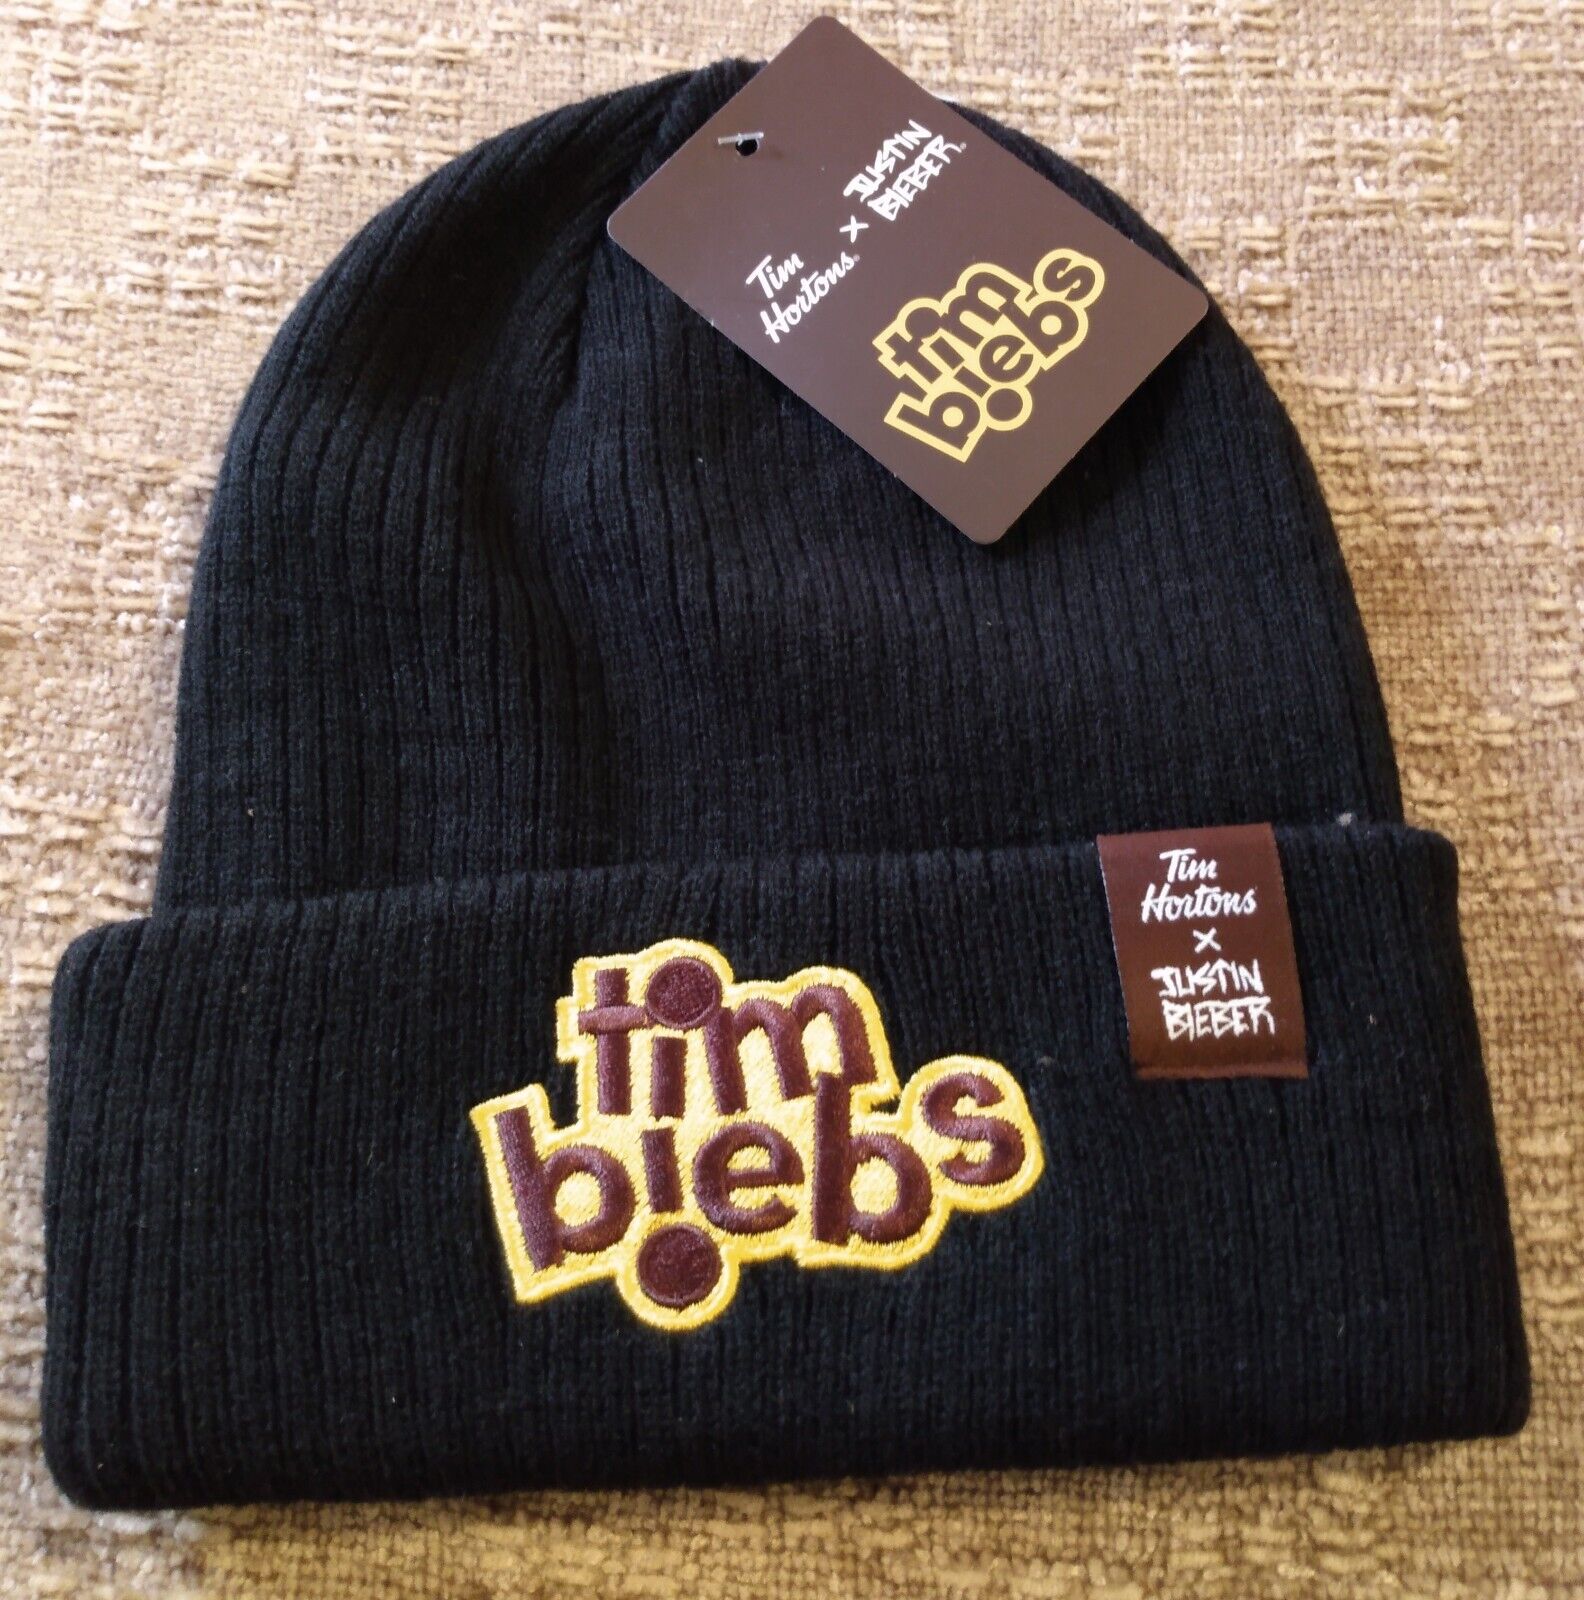 Justin Bieber Tim Hortons Collaboration Tim Biebs Beanie Winter Hat Black Toque